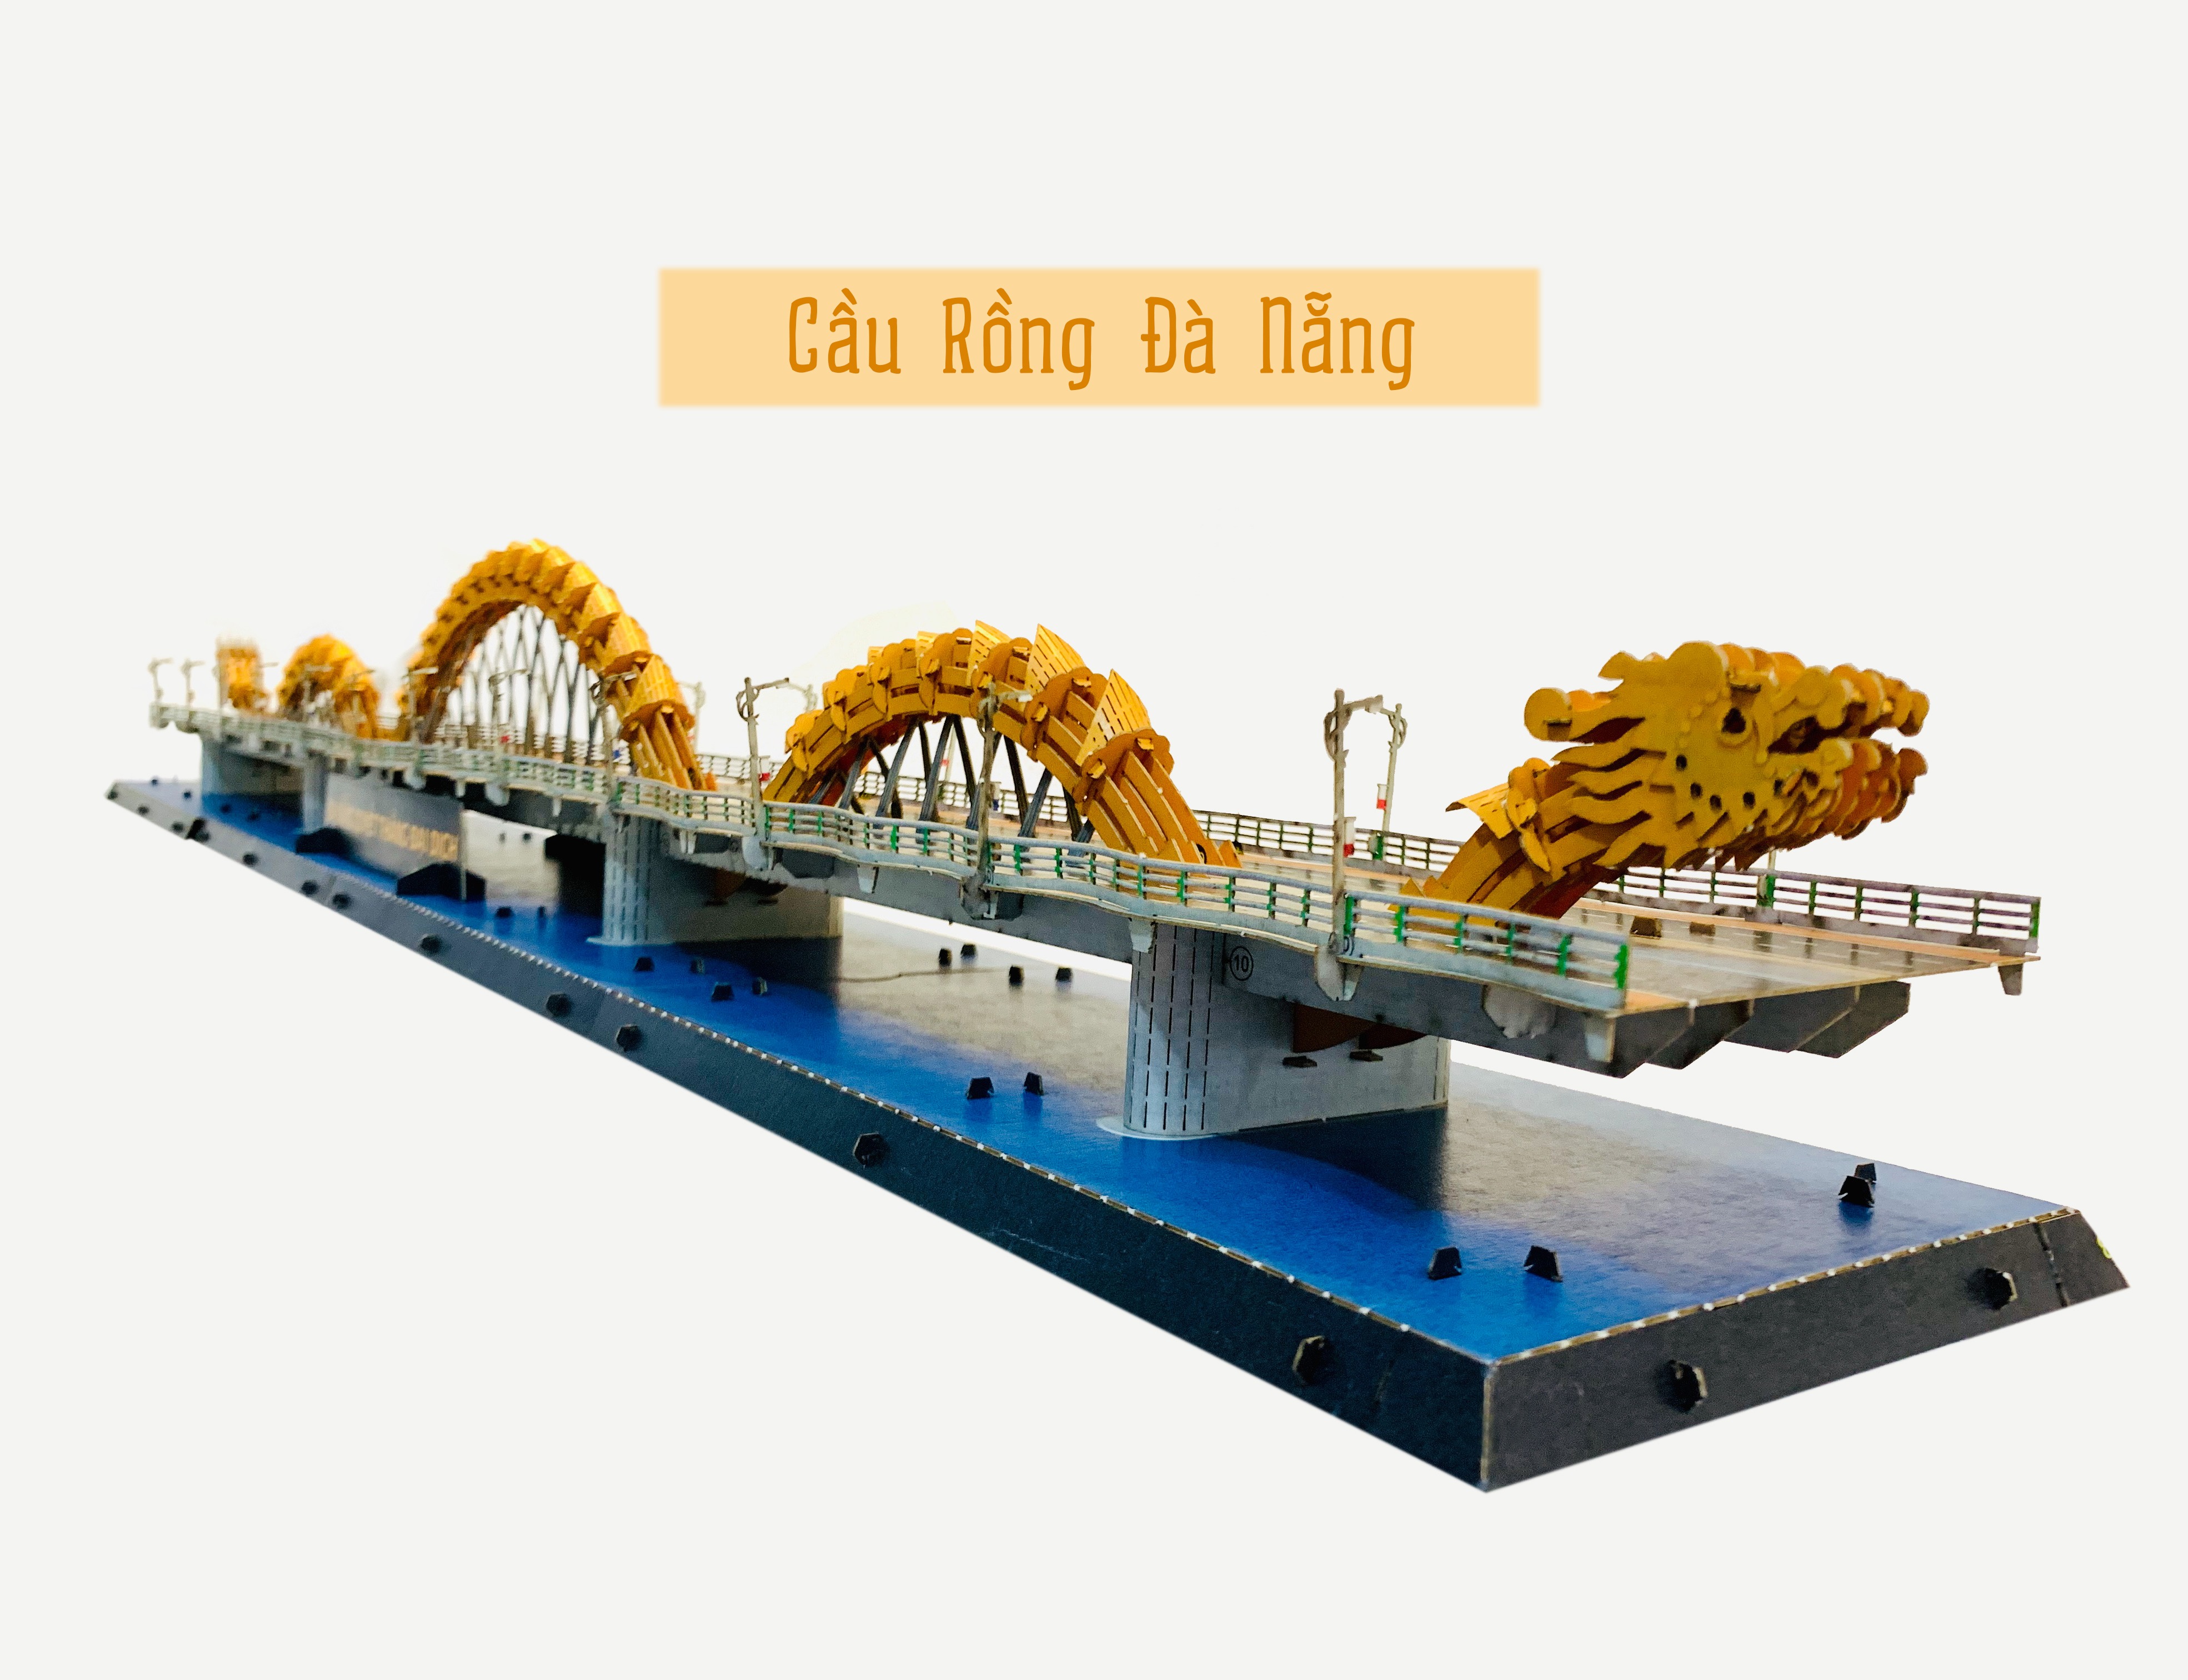 Cầu Rồng Đà Nẵng - Được xem là niềm tự hào của dân tộc Việt Nam, Cầu Rồng Đà Nẵng với thiết kế ấn tượng, tinh tế đã thu hút sự quan tâm của du khách trong và ngoài nước. Hãy xem hình ảnh liên quan để khám phá vẻ đẹp của cây cầu đầy màu sắc này vào ban đêm.